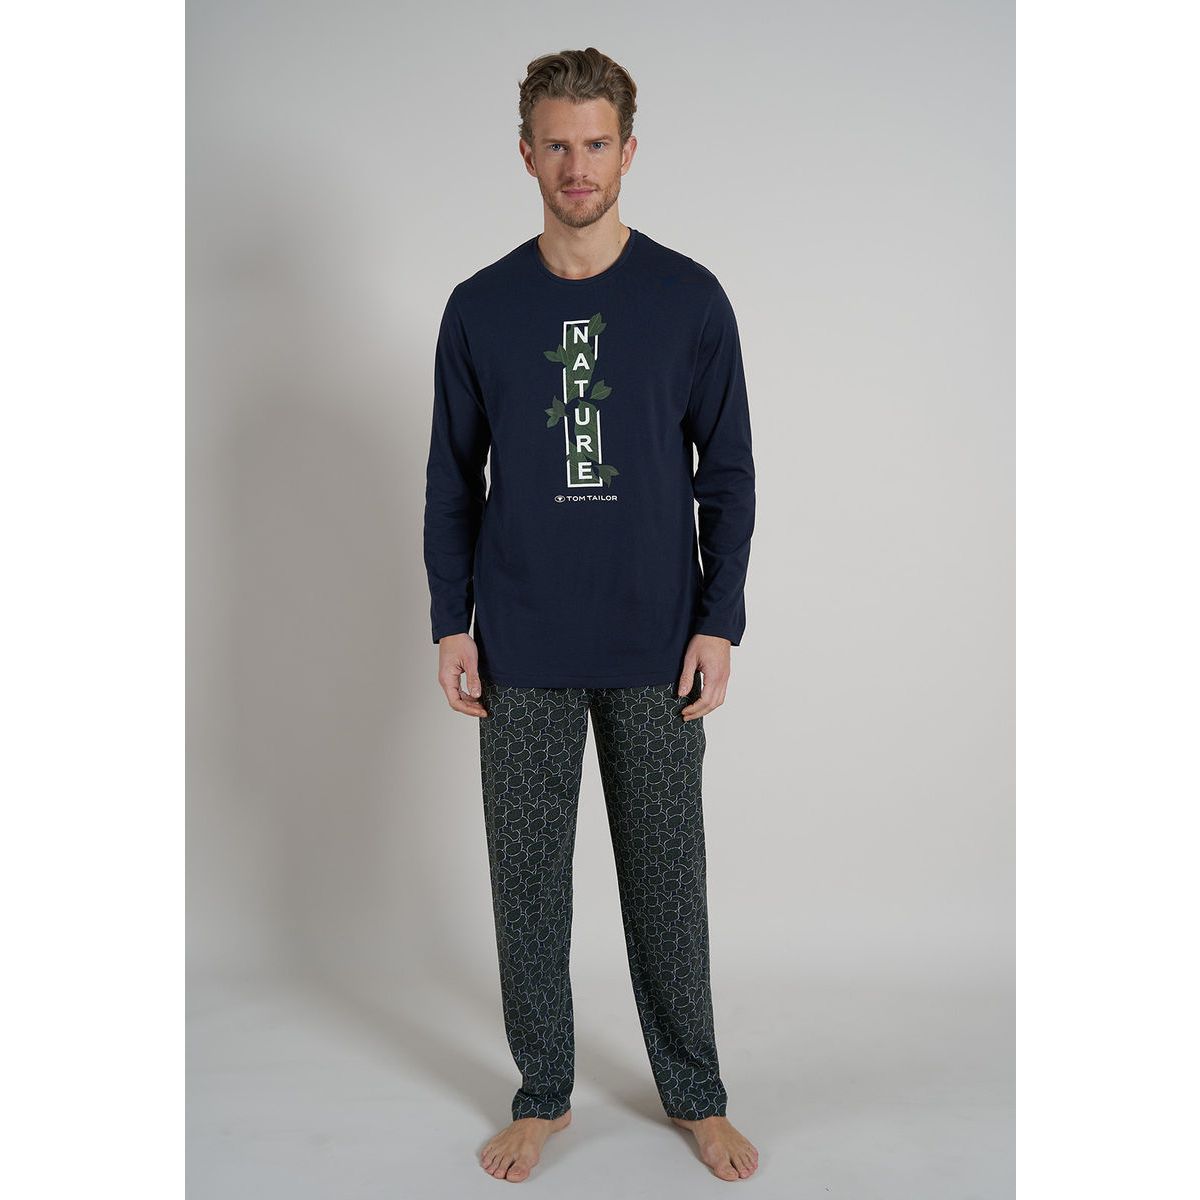 Groene Tom Tailor pyjama Nature | Gratis verzending vanaf € 40,- | Gratis  retour | Snel in huis | Online de mooiste pyjama\'s, nachthemden, ondermode  en meer